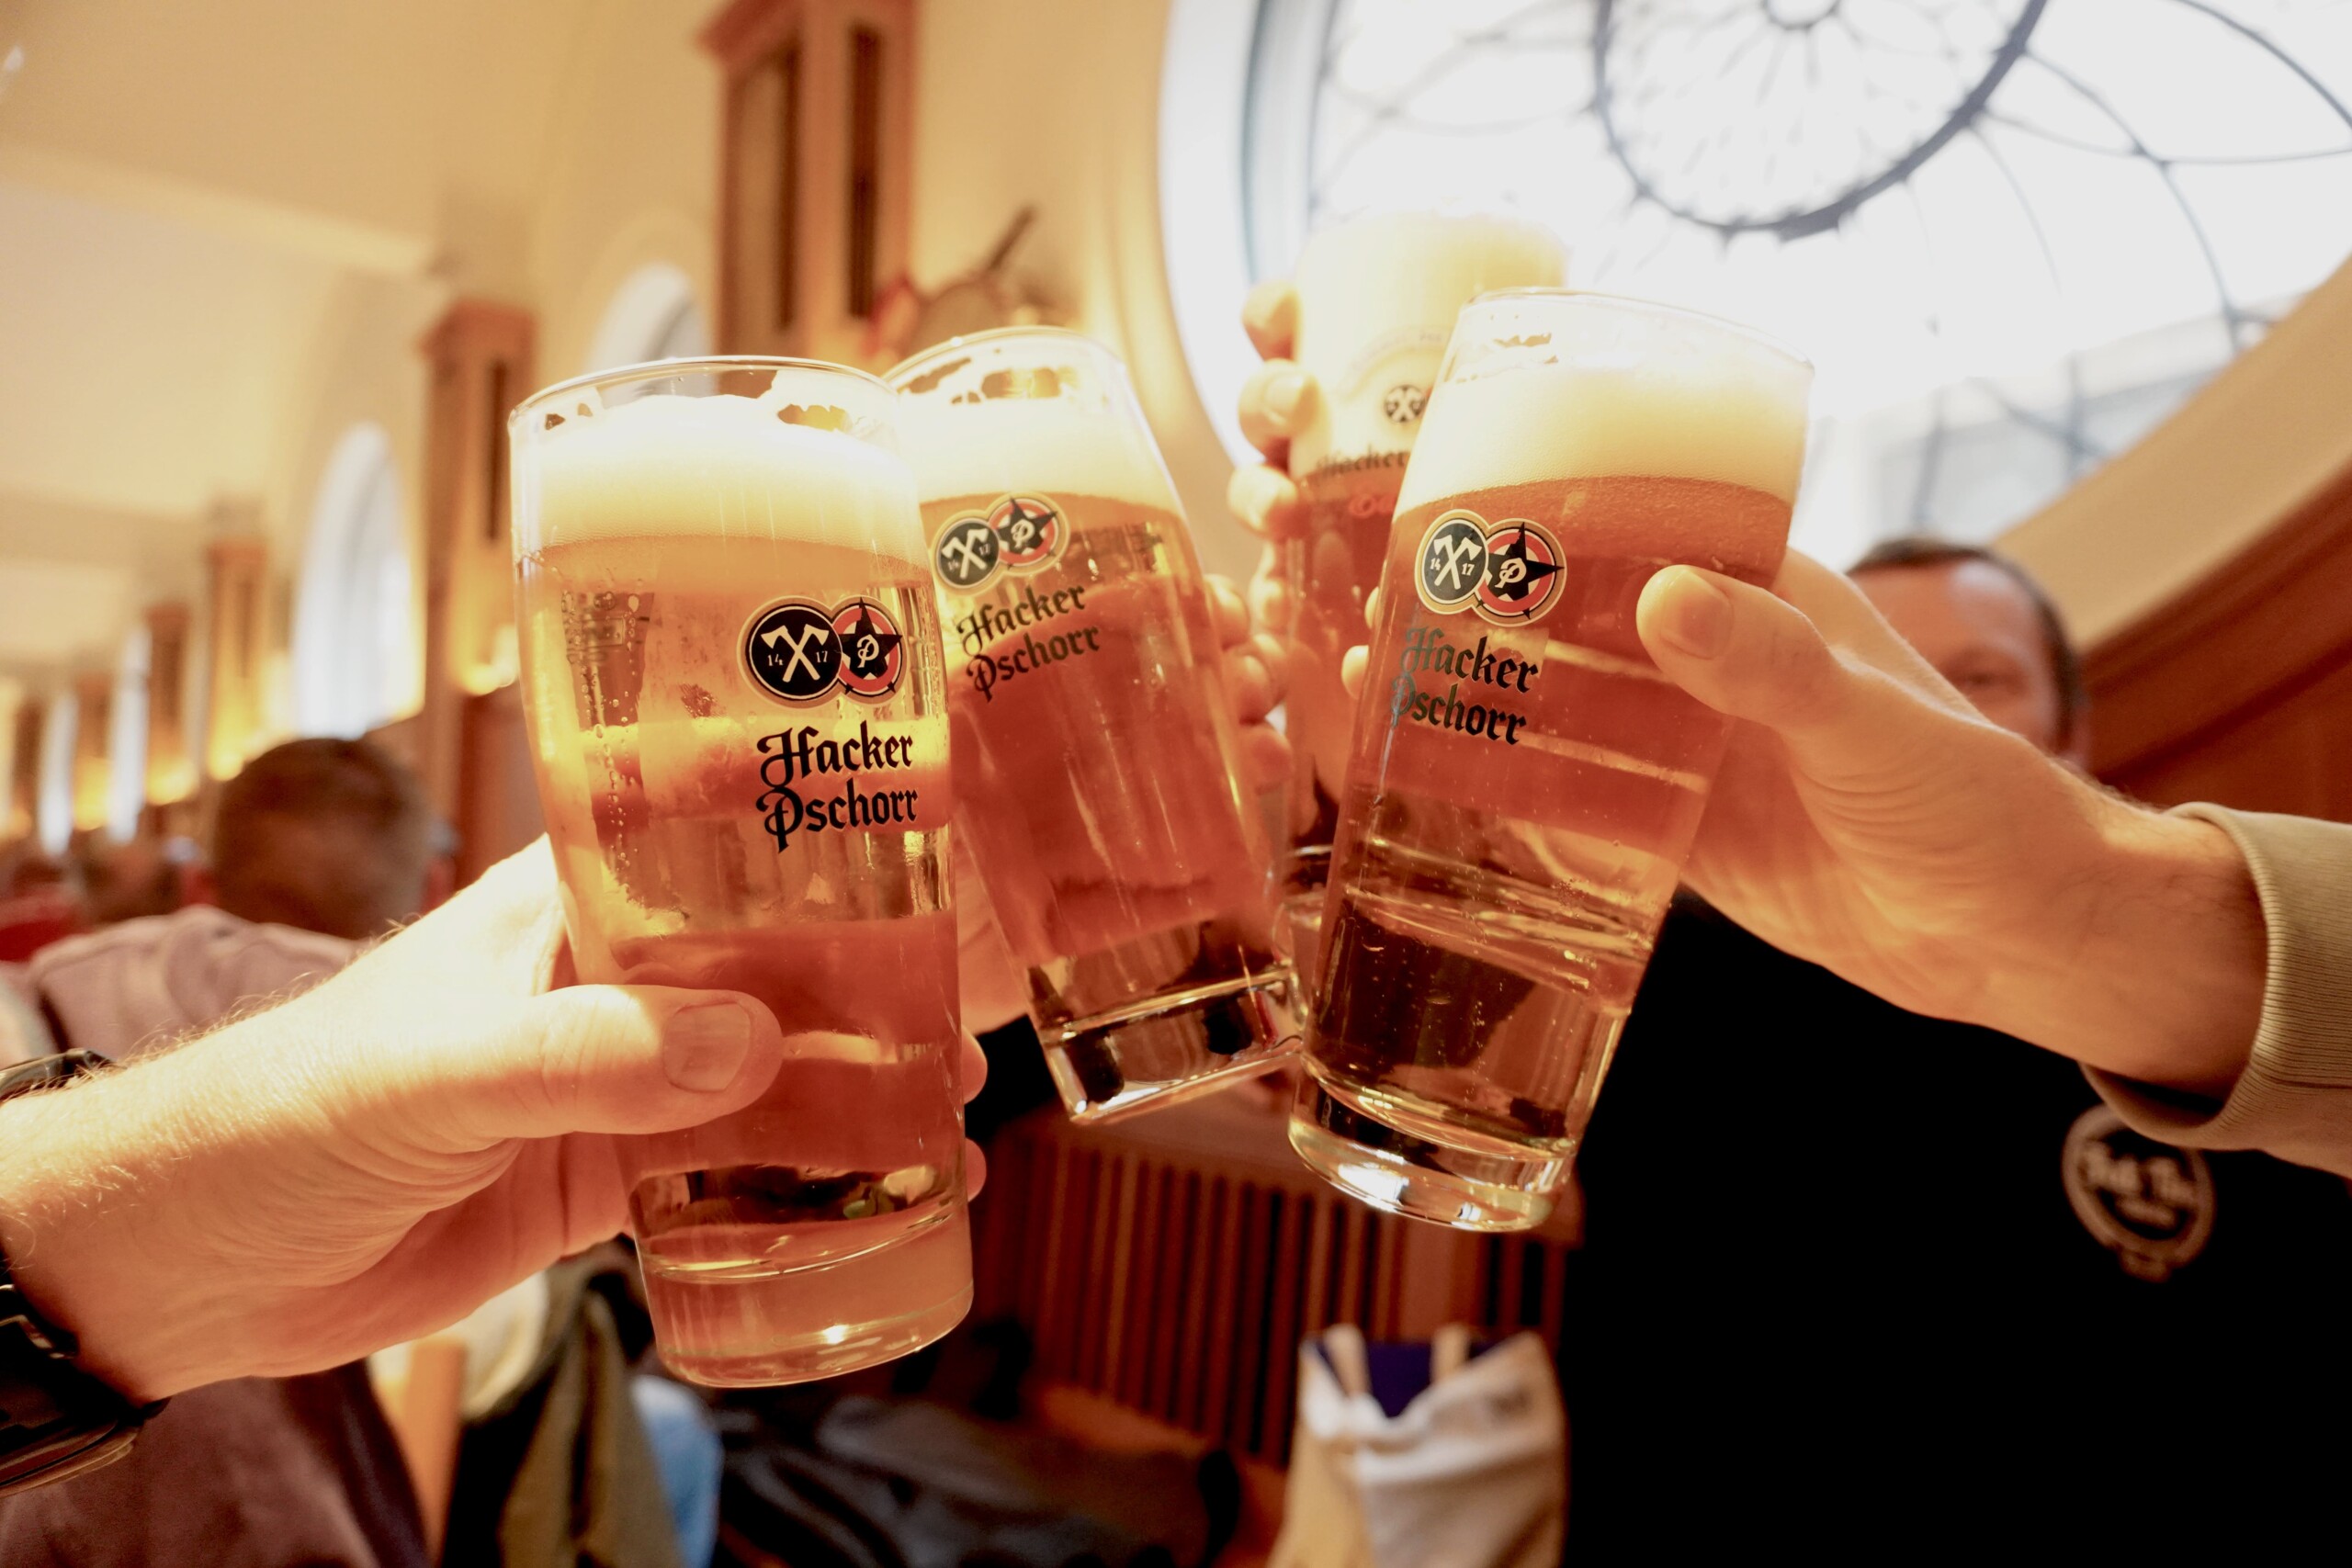 Three Hacker-Pschorr beer glasses cheers